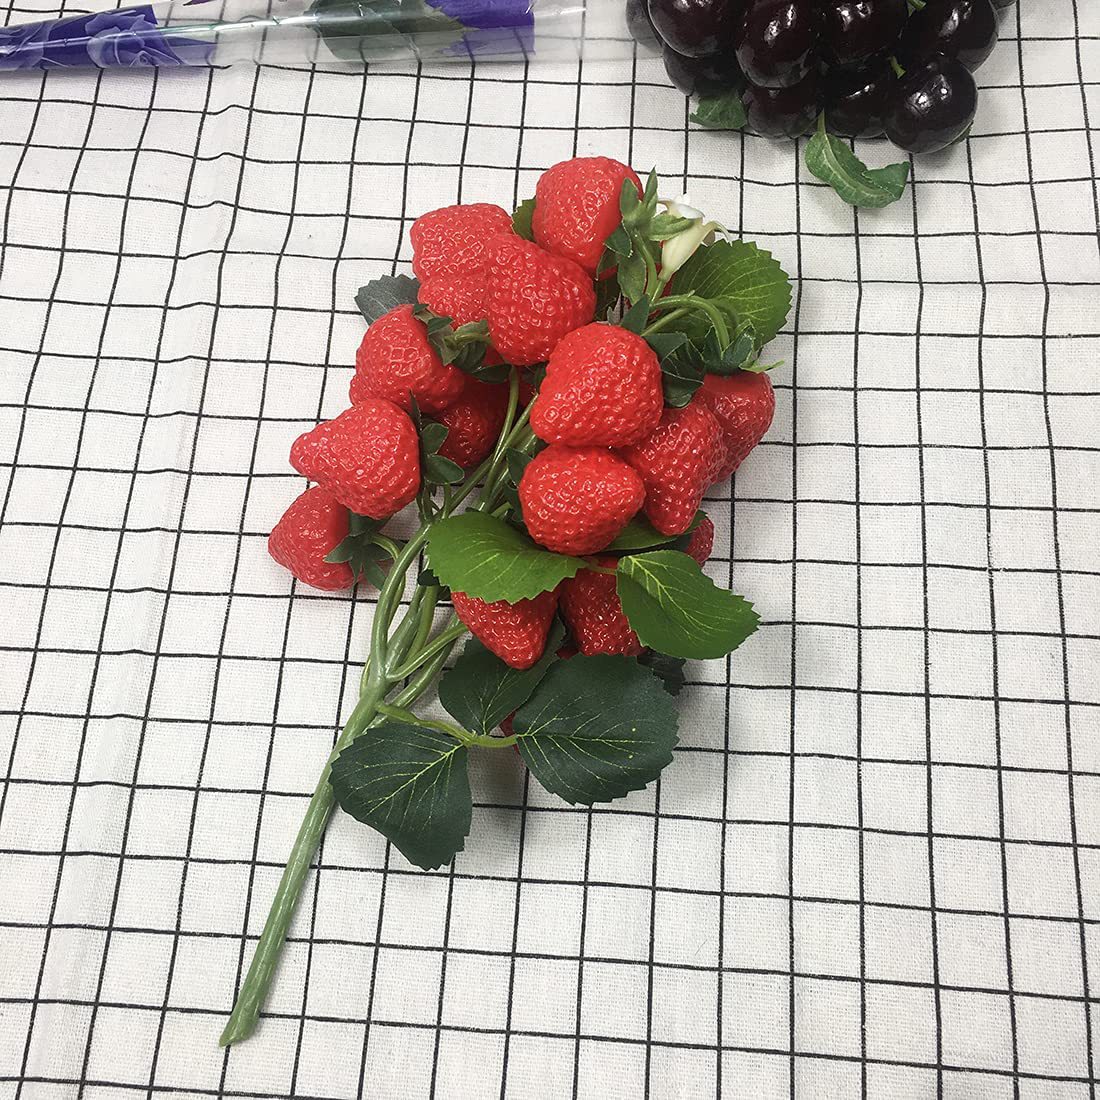 草莓仿真植物中式花束网红制作仿真花束节日礼物家居装饰摆件